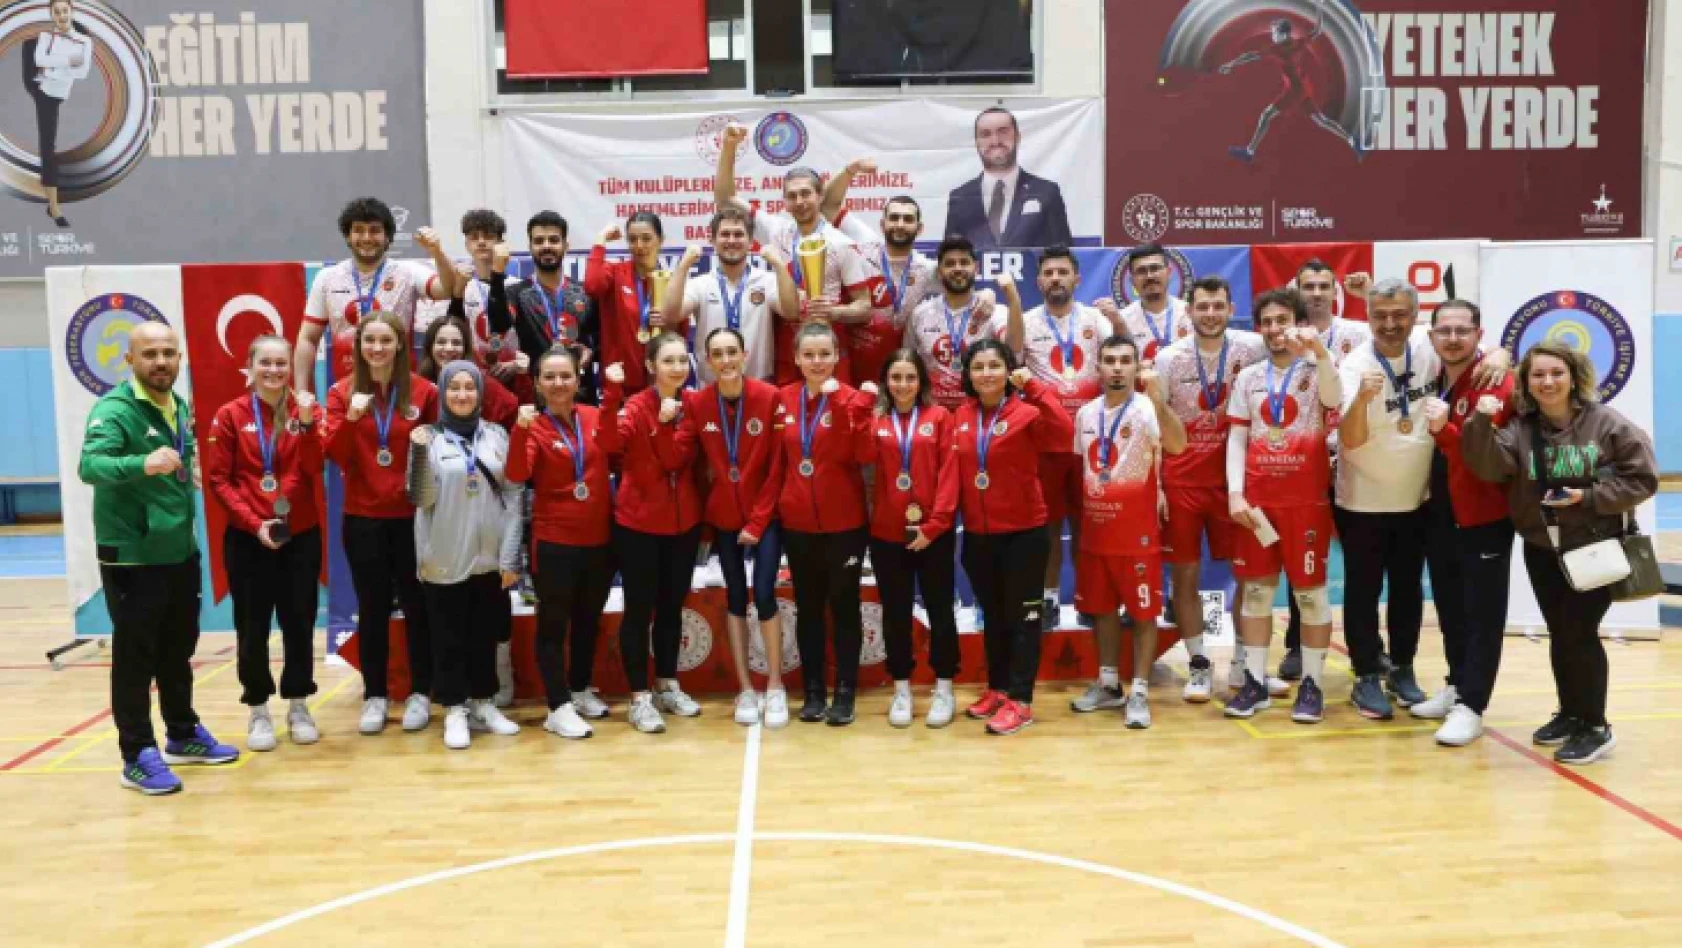 Gölcük'ün işitme engelliler kadın ve erkek voleybol takımı 3. kez Türkiye şampiyonu oldu